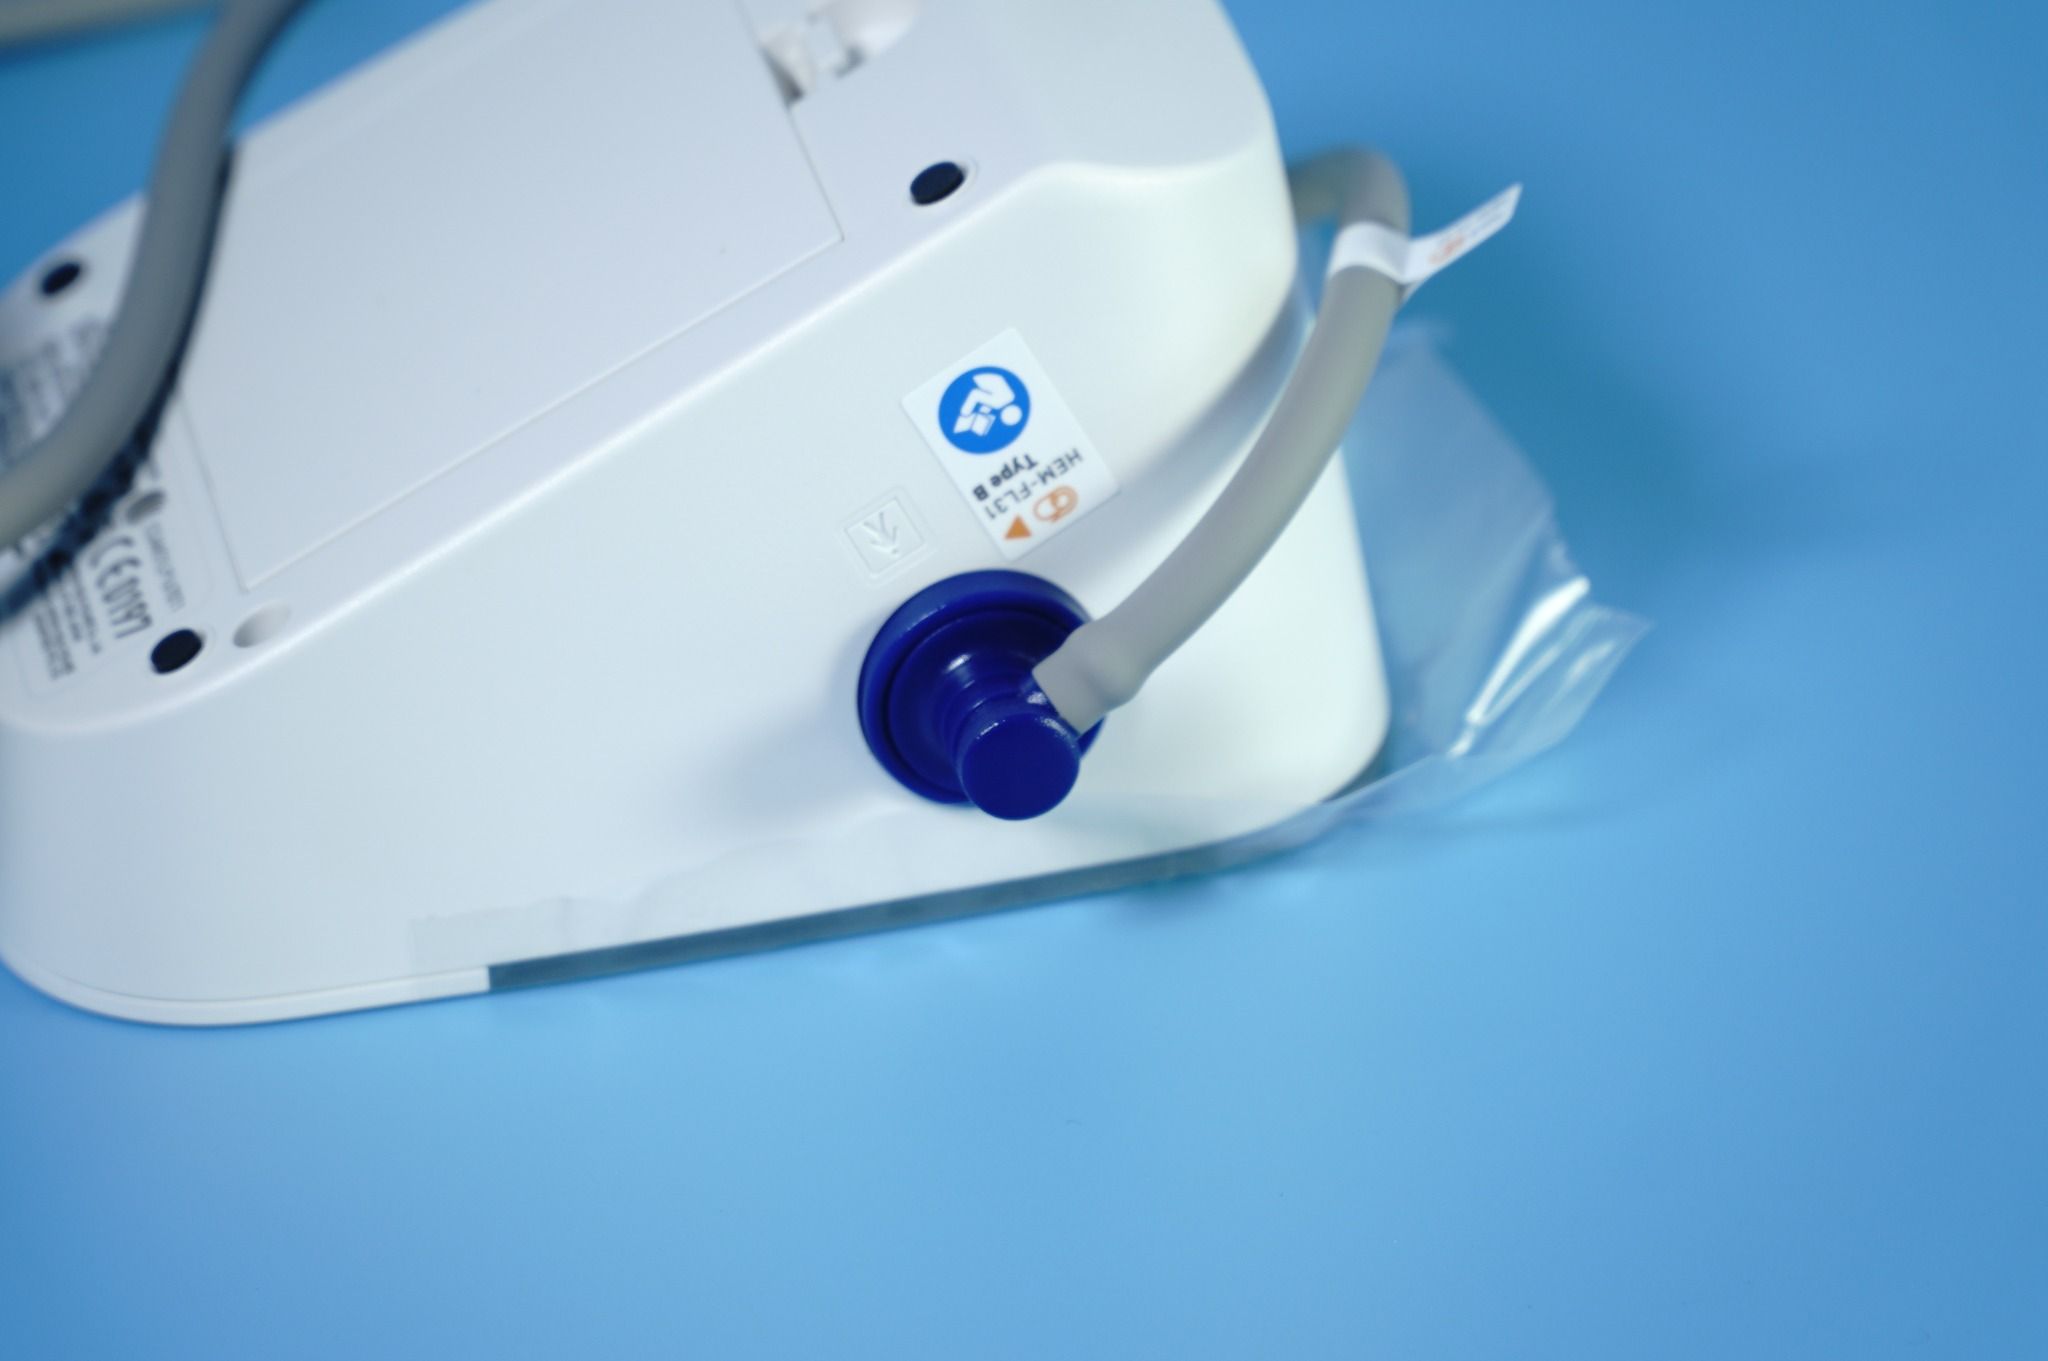  Máy đo huyết áp bắp tay Omron HEM-7156T kết nối Bluetooth thông minh 